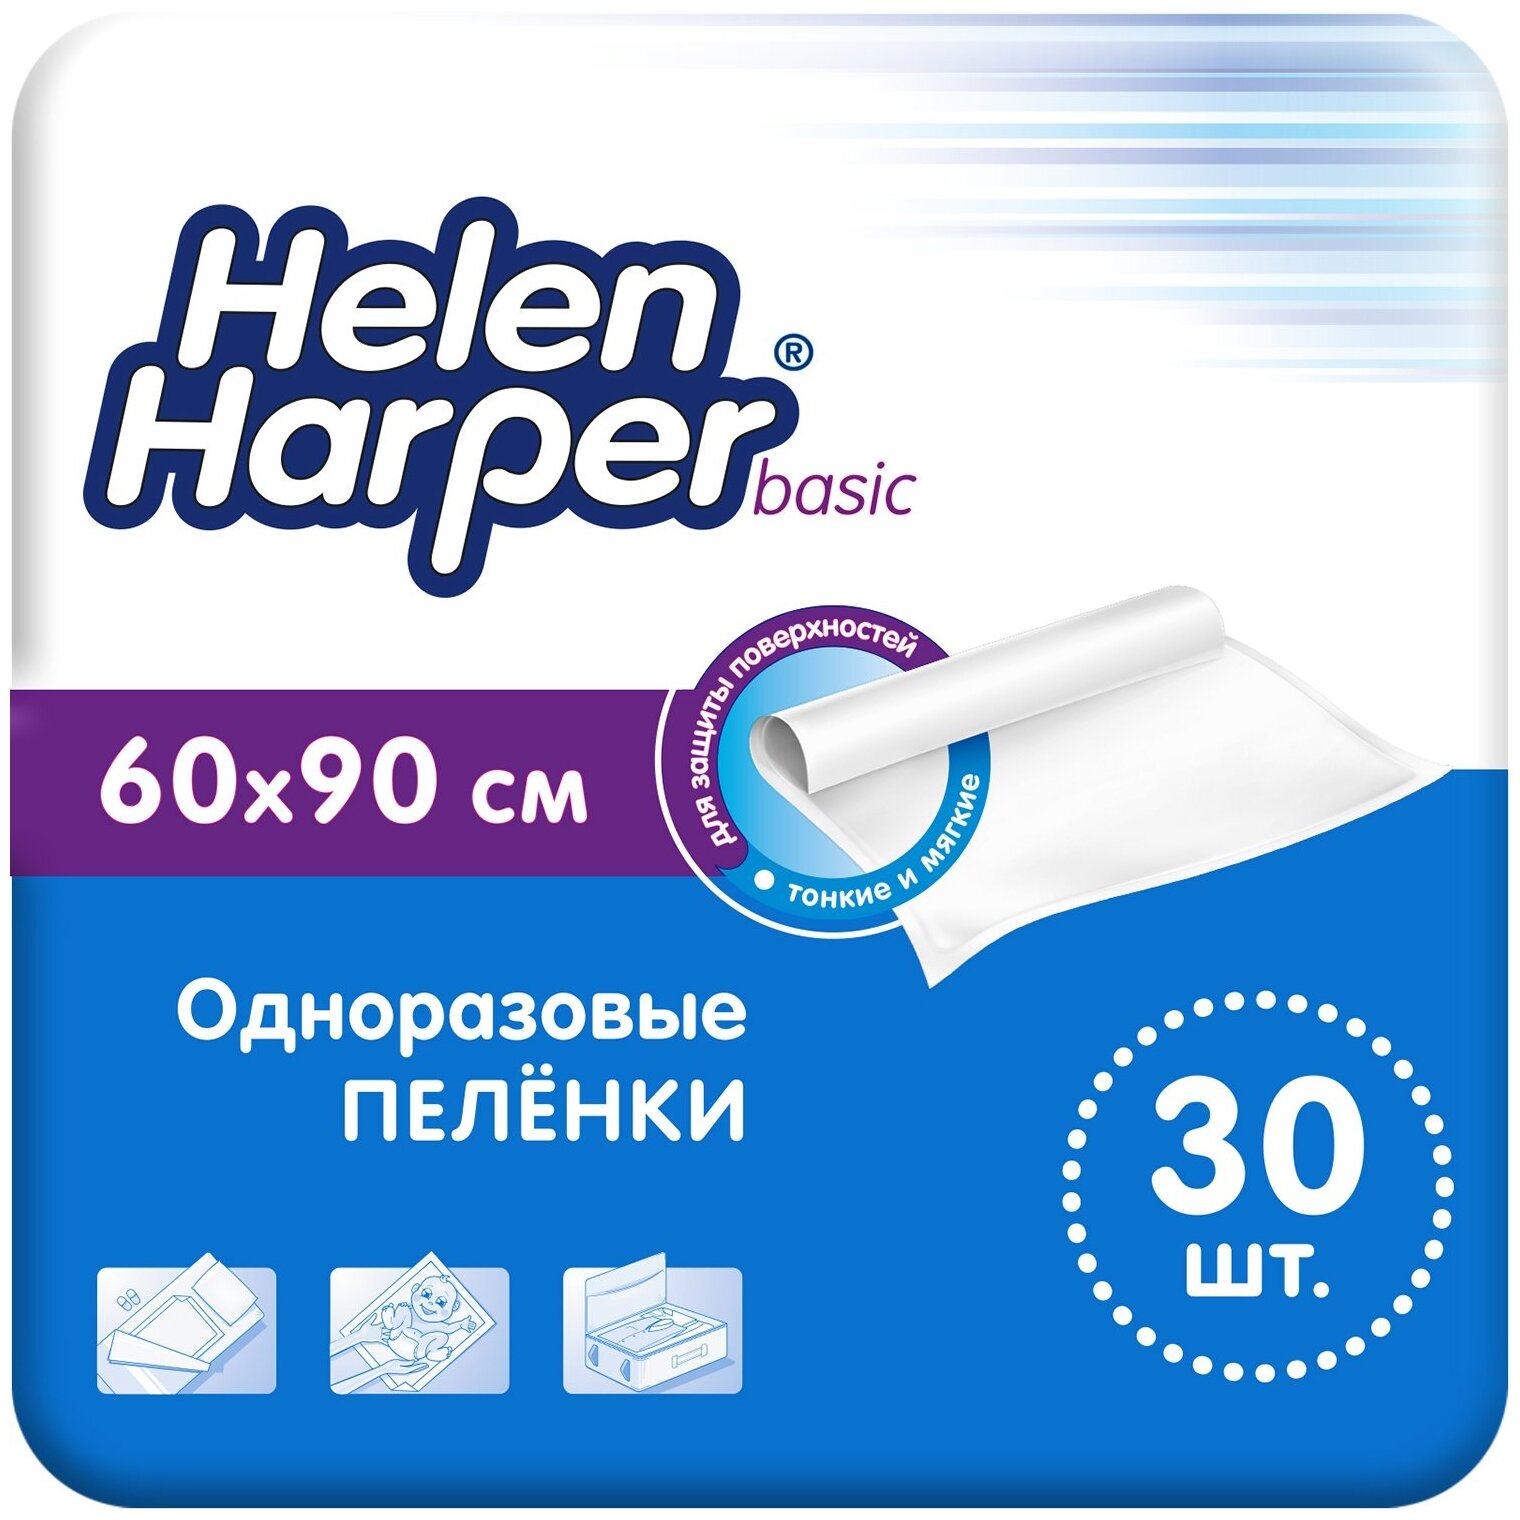 Пеленки Helen Harper Basic 60х90 см